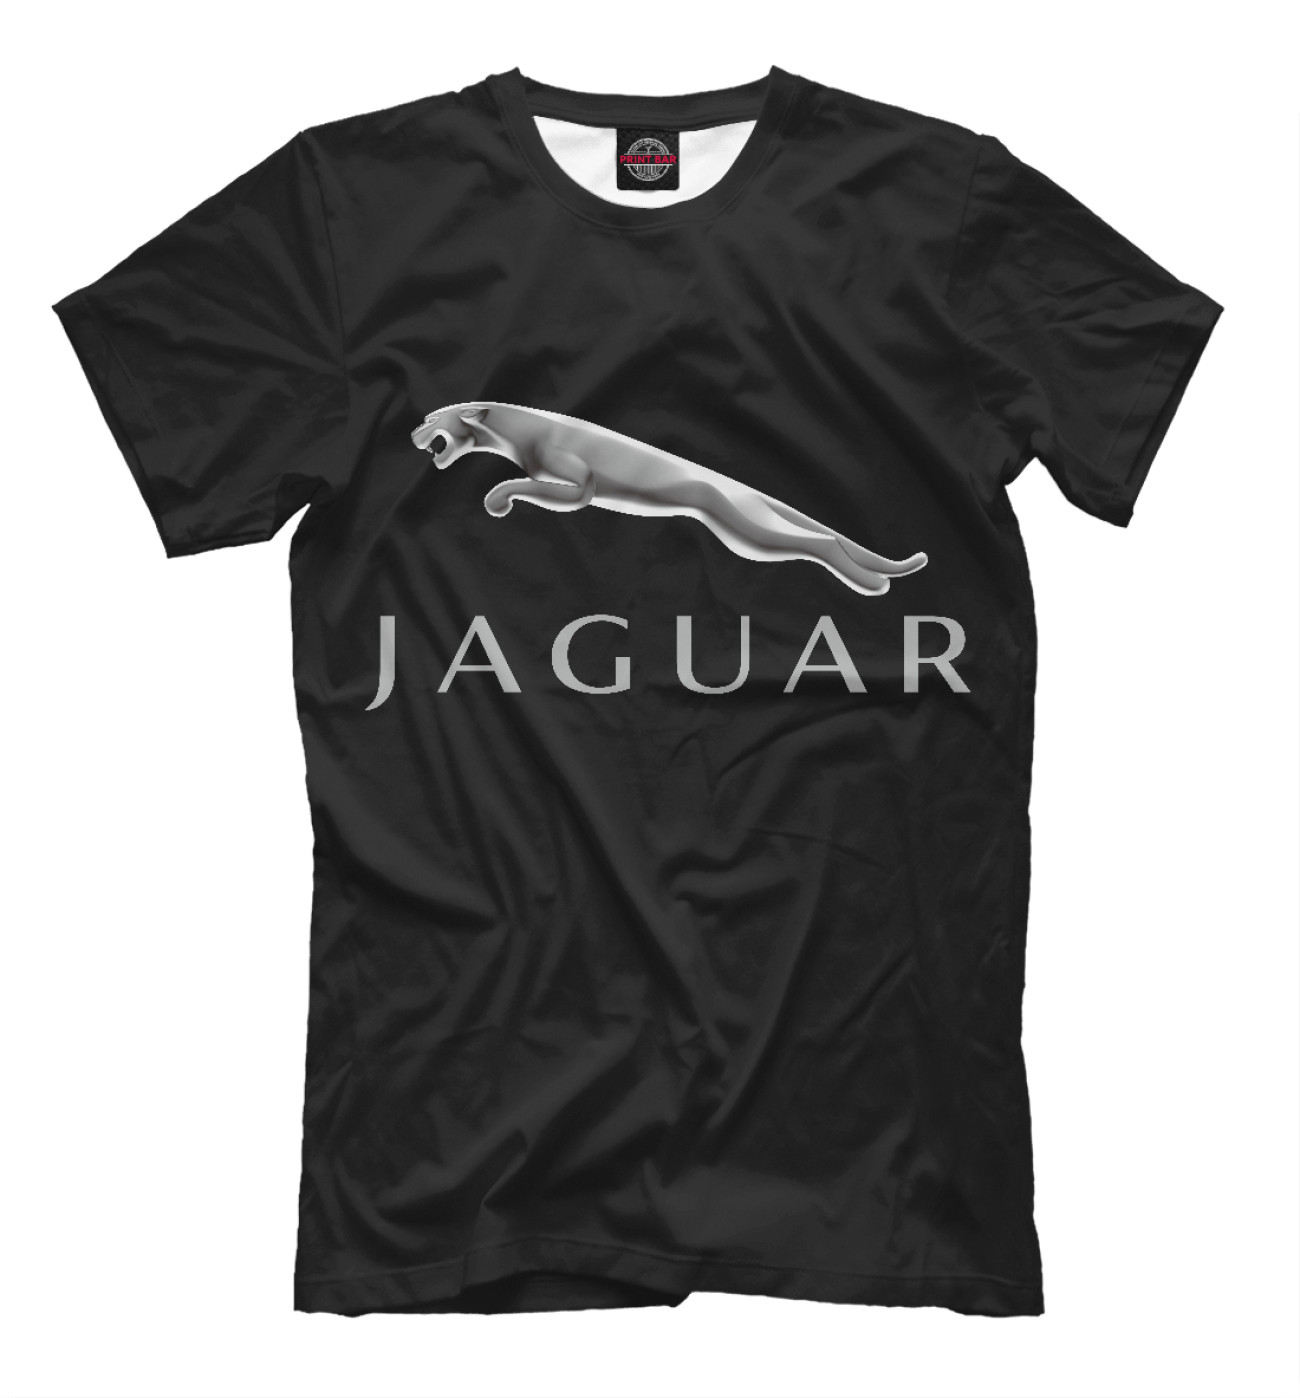 Мужская Футболка Jaguar Premium, артикул: JAG-178833-fut-2